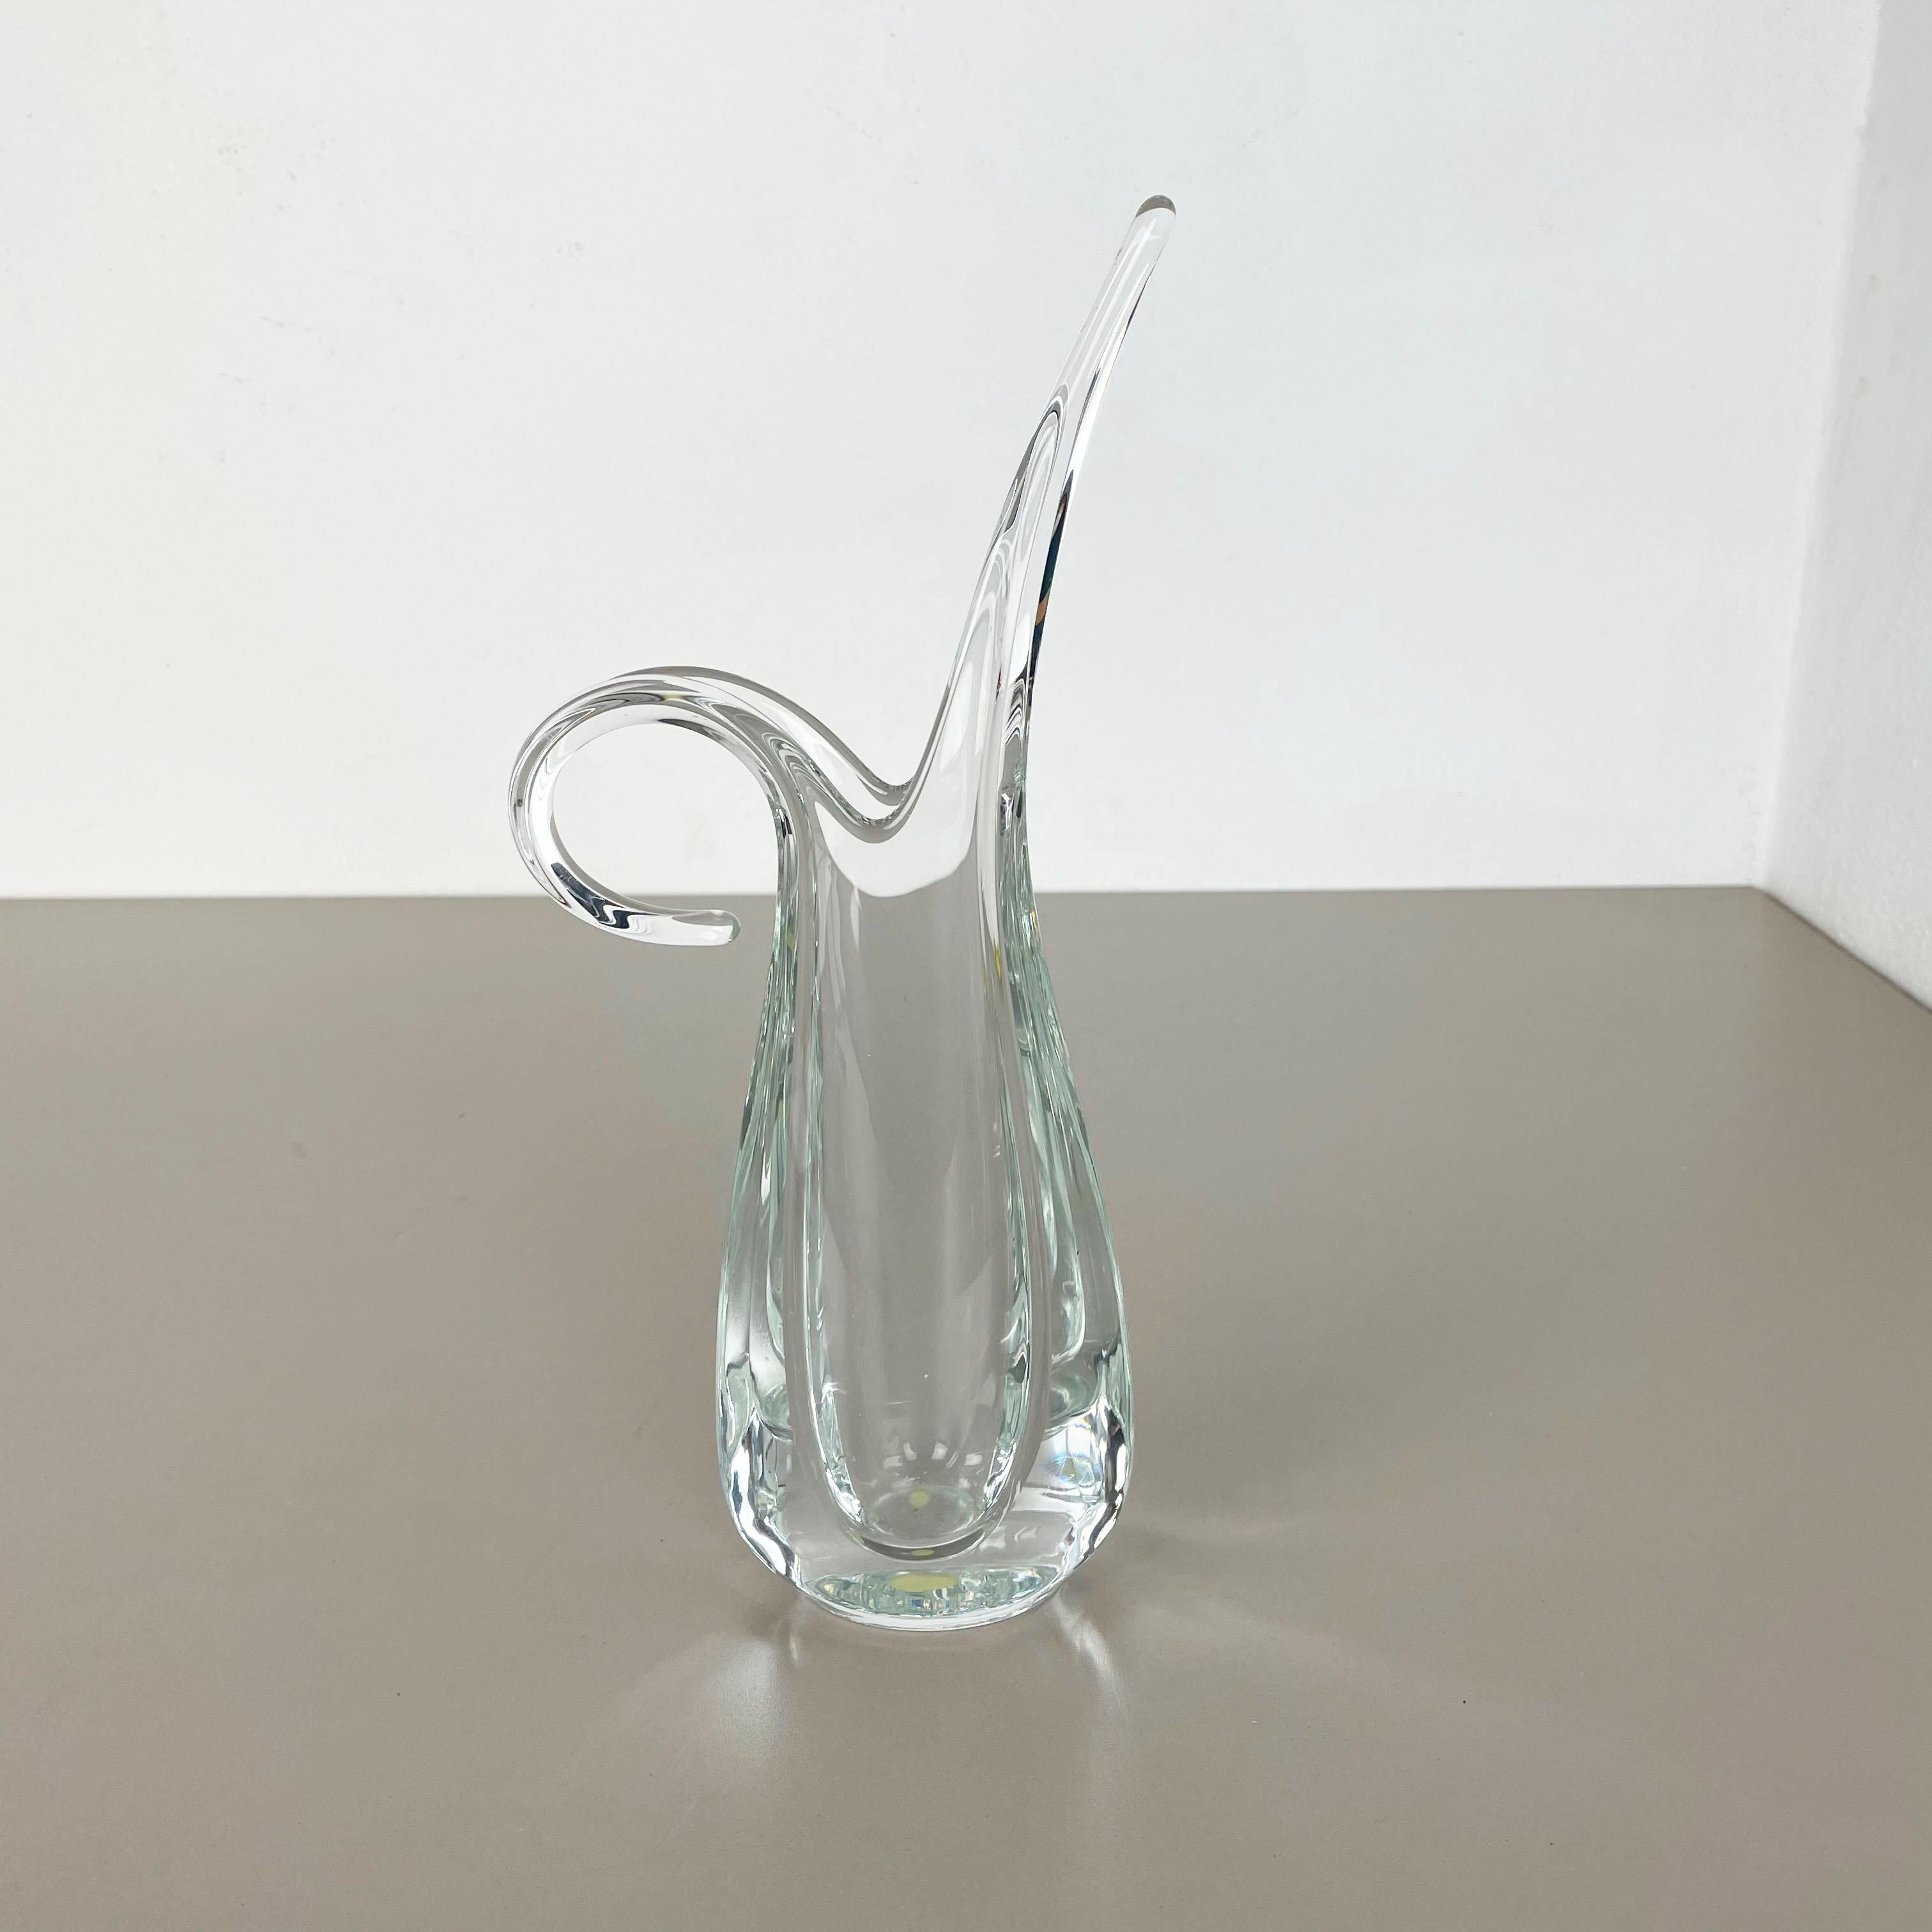 Artikel: Vase aus Kristallglas



Produzent: ART VANNES FRANCE (markiert)


Entwurf: Flavio Poli zugeschrieben.



Alter: 1970er Jahre



 

Wunderschönes schweres Glaselement, entworfen von Flavio Poli und hergestellt von Art Vannes in Frankreich